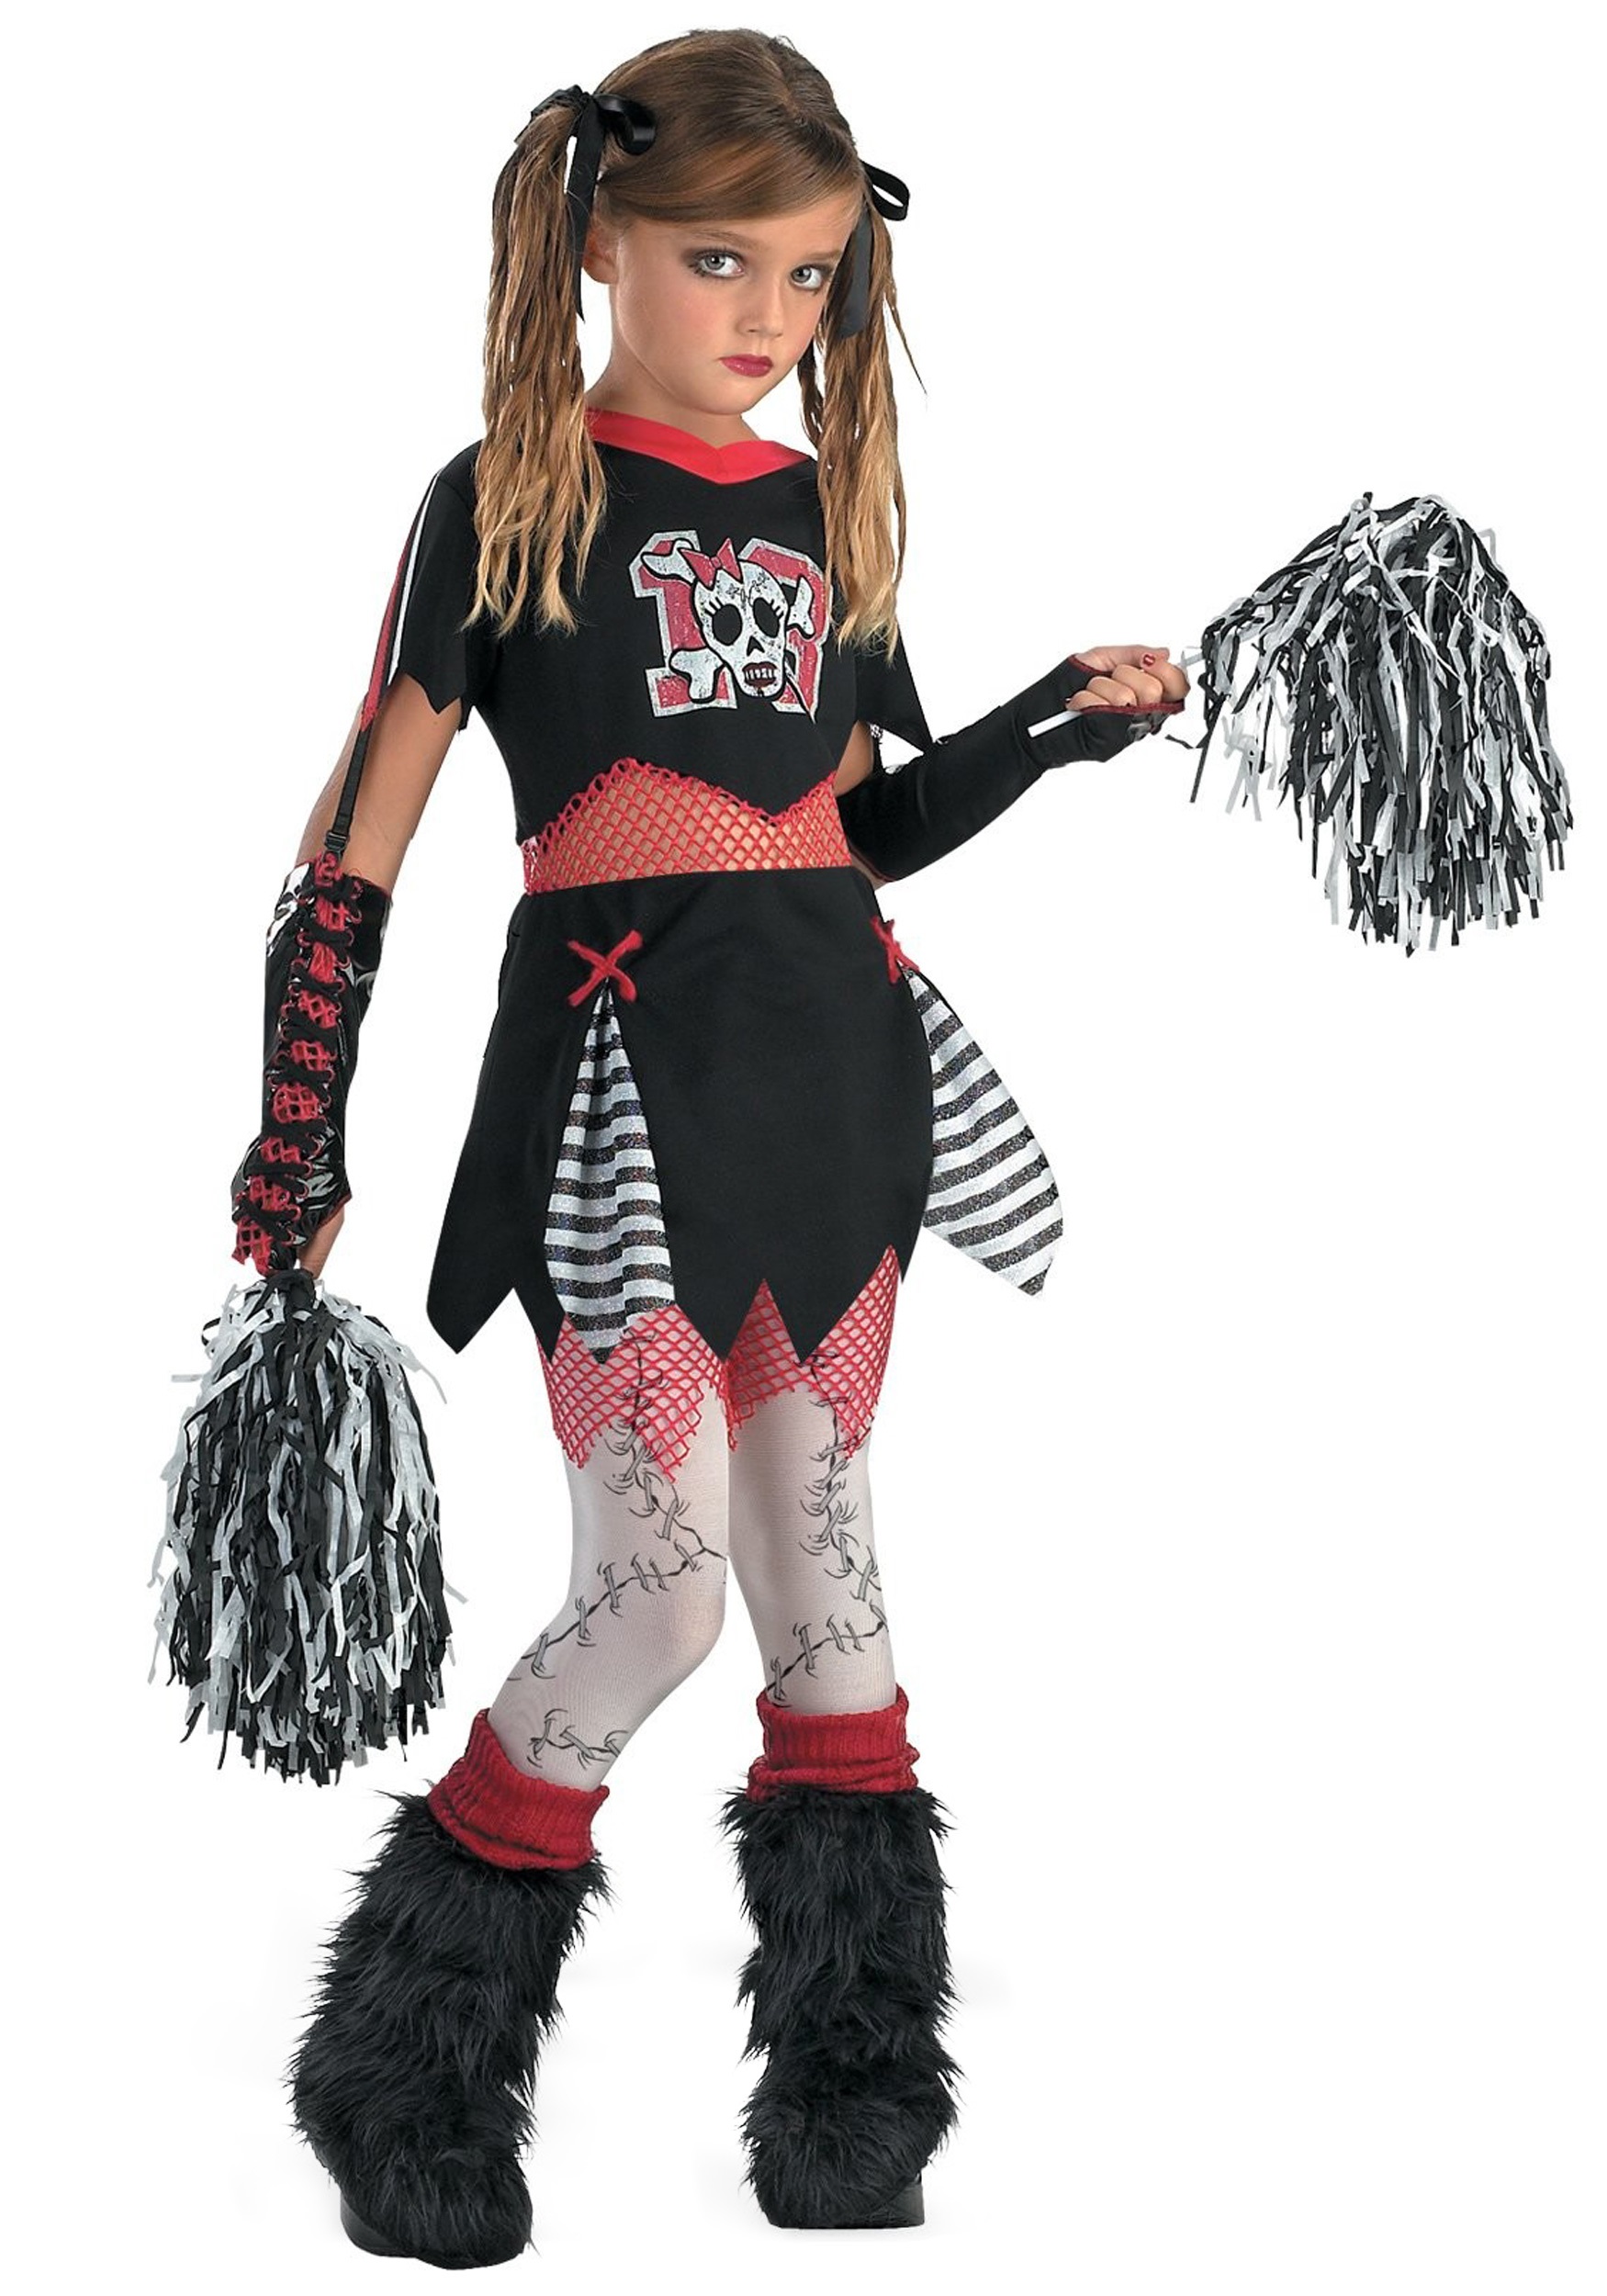 Kids Gothic Cheerleader Costume Girl's Cheerleader Costume